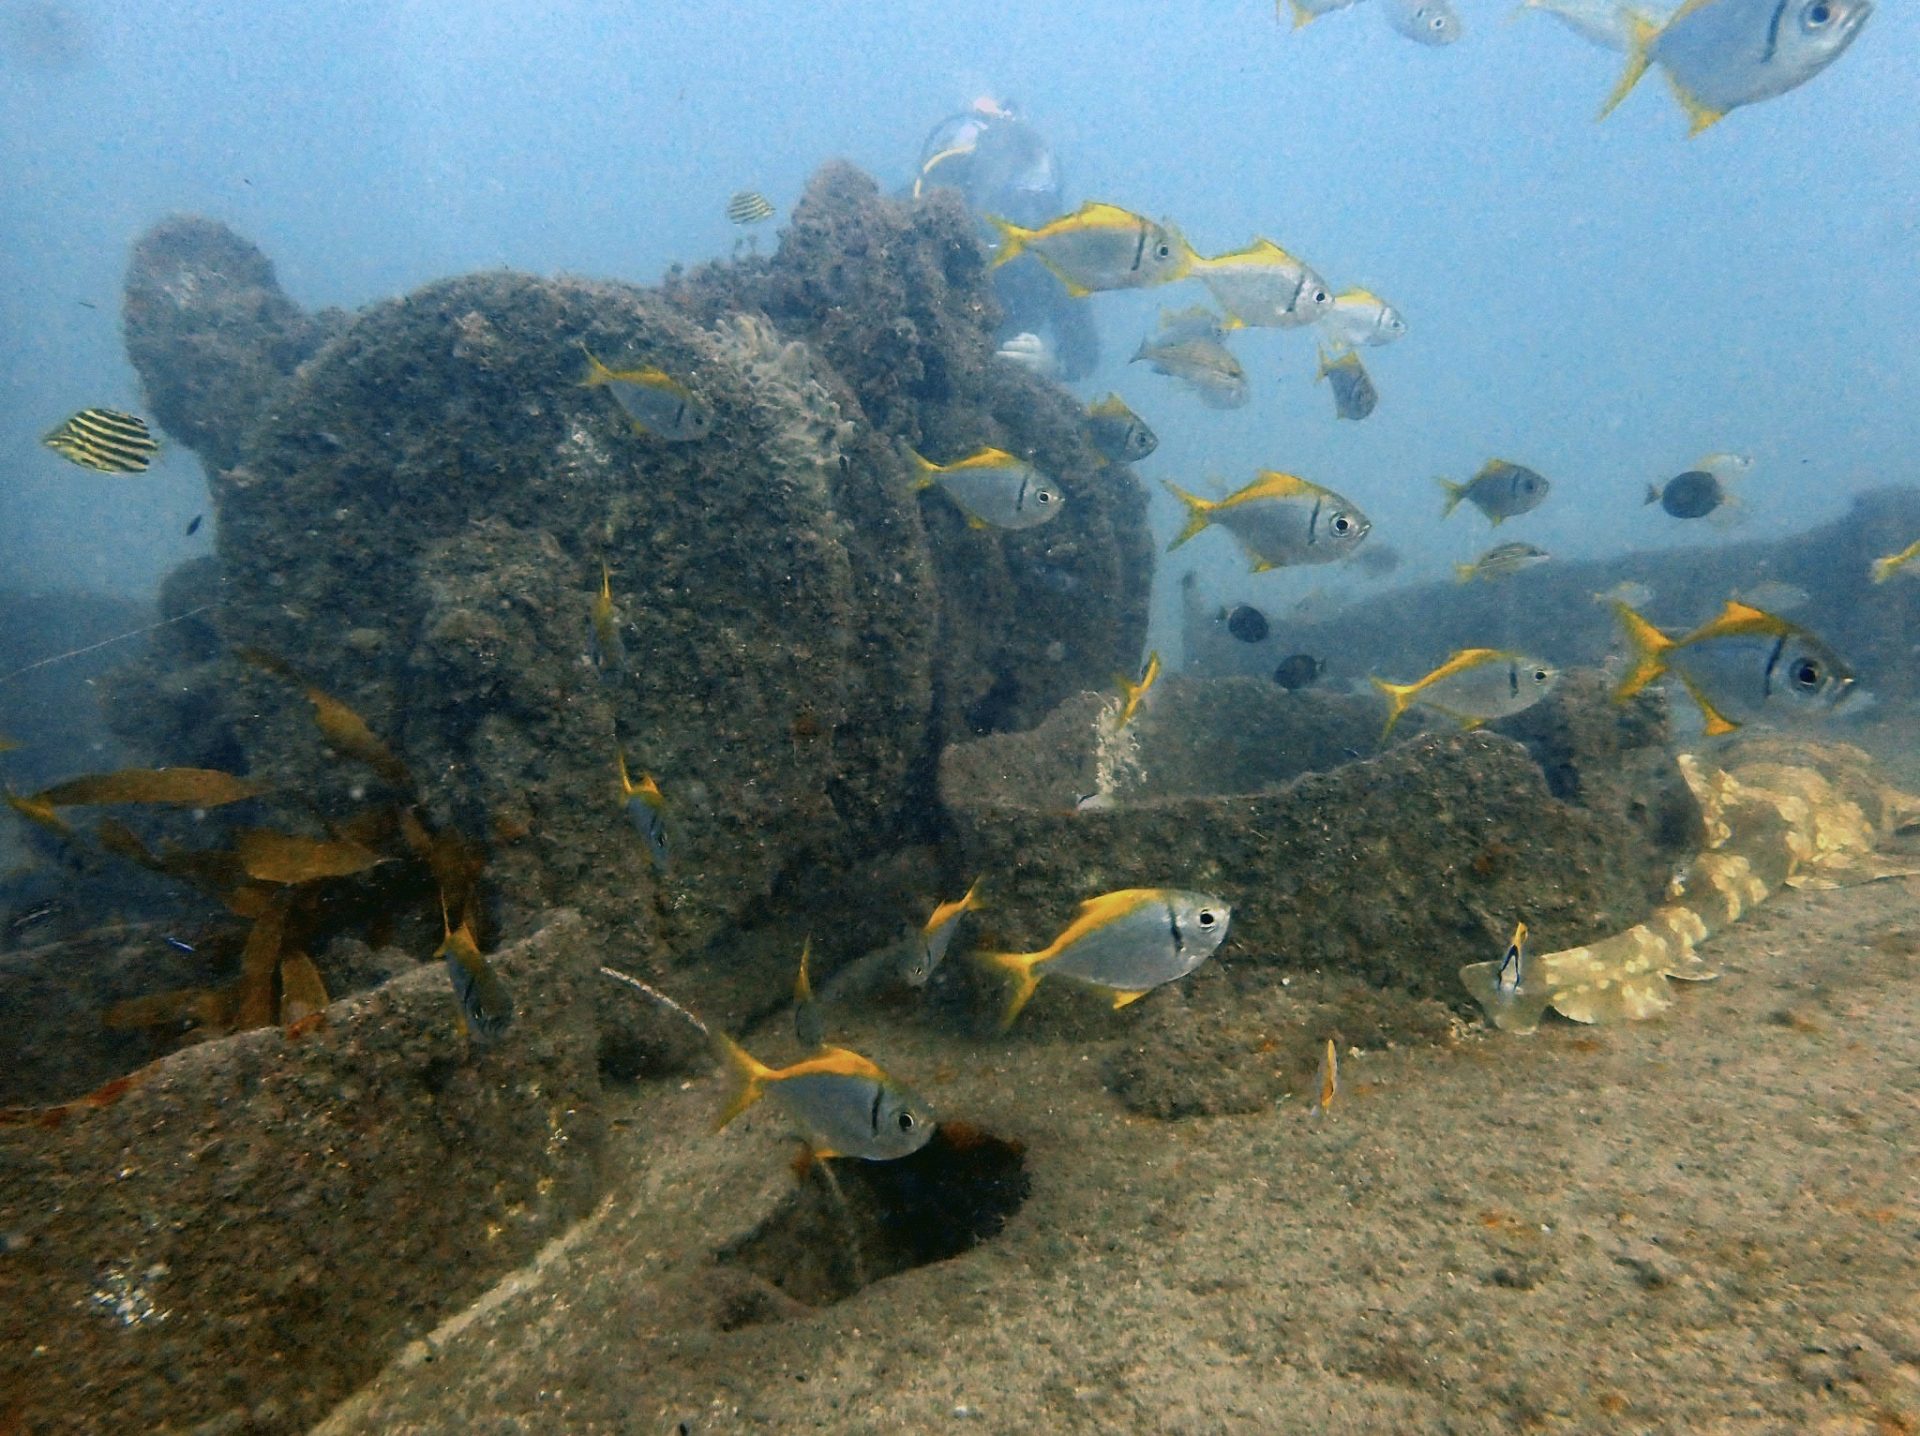 Aquarian Shipwreck Gold Coast